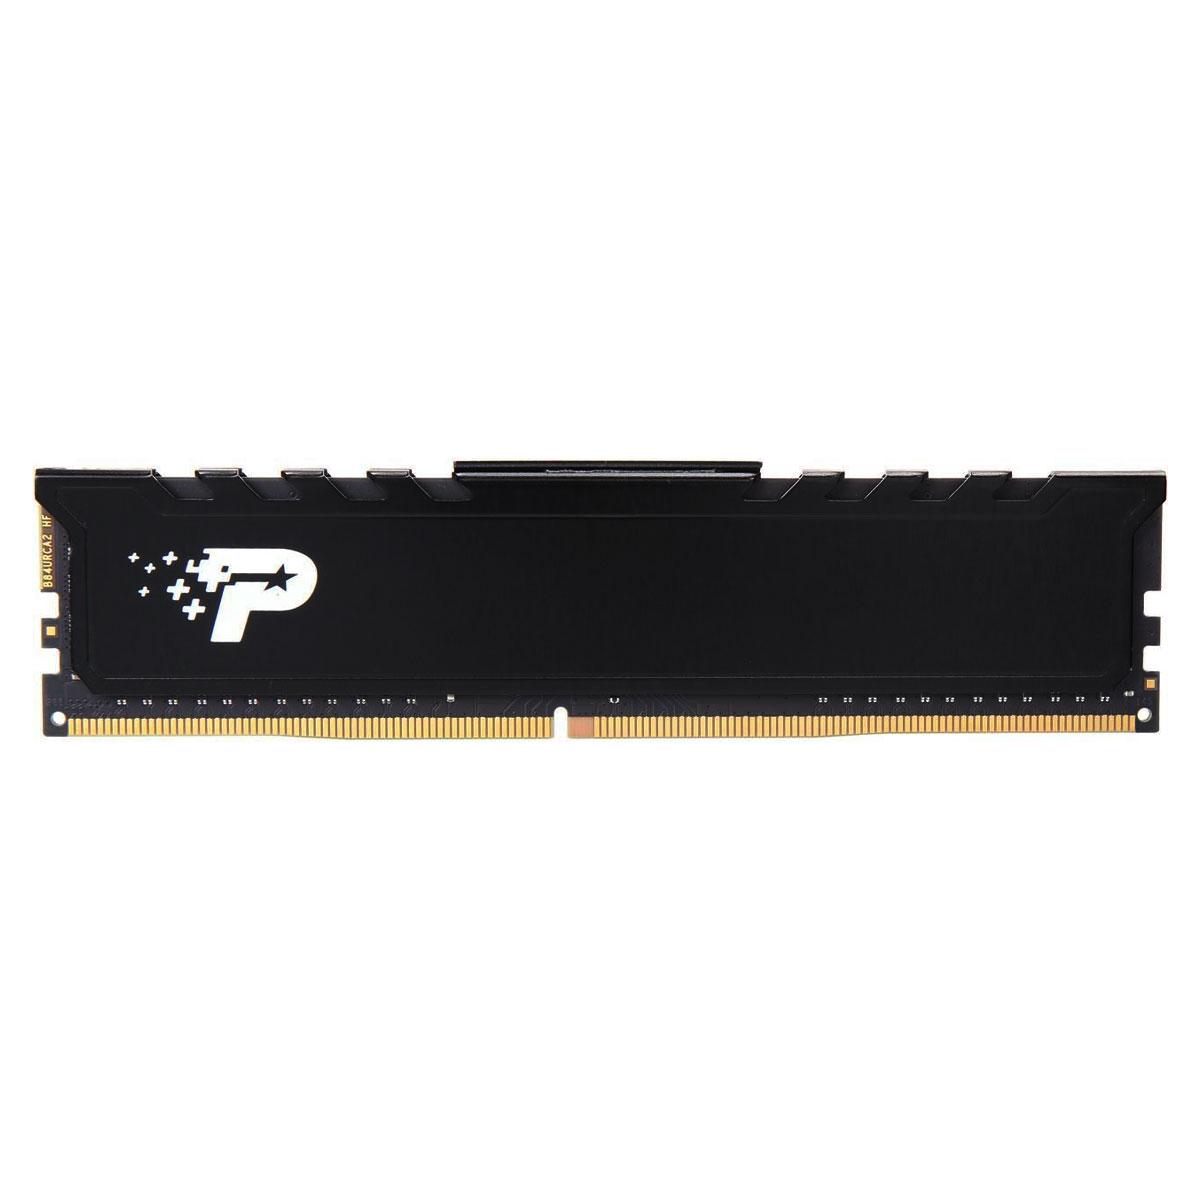 MEMORIA DIMM DDR4 PATRIOT (PSP416G26662H1) SIGNATURE PREMIUM 16GB 2666MHZ, BLACK HEATSINK,CL19 - PATRIOT